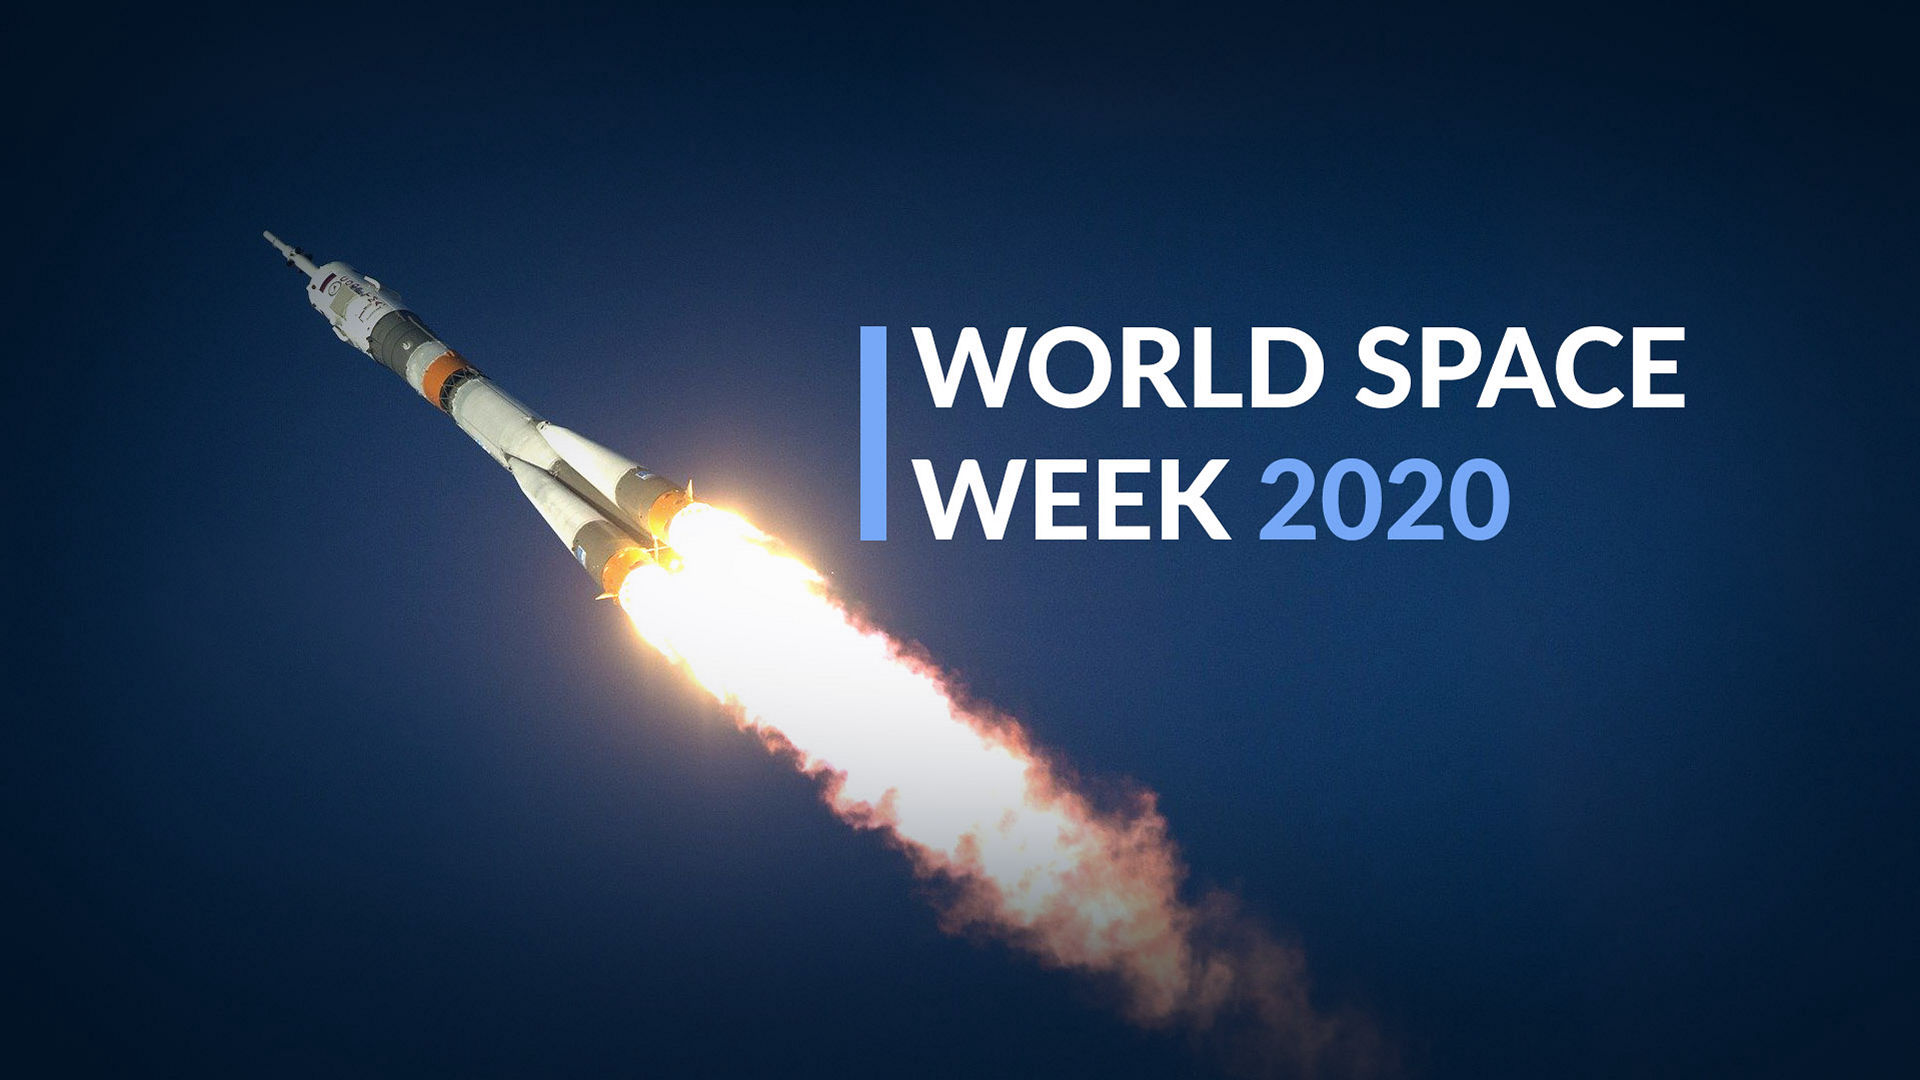 Começou a Semana Mundial do Espaço 2020!